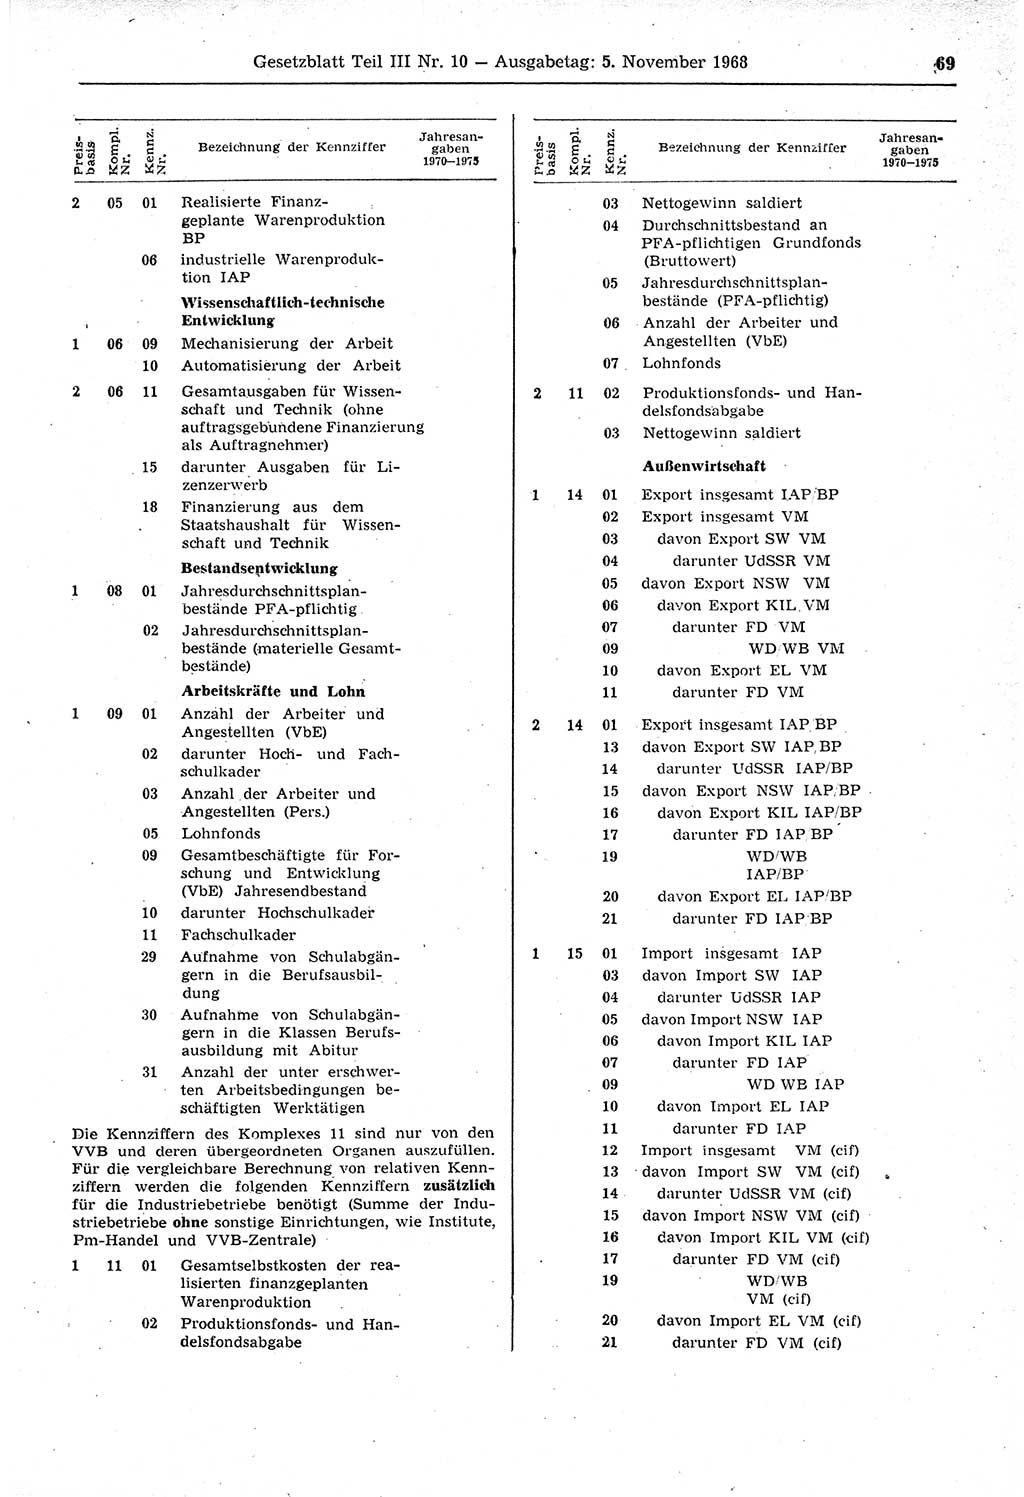 Gesetzblatt (GBl.) der Deutschen Demokratischen Republik (DDR) Teil ⅠⅠⅠ 1968, Seite 69 (GBl. DDR ⅠⅠⅠ 1968, S. 69)